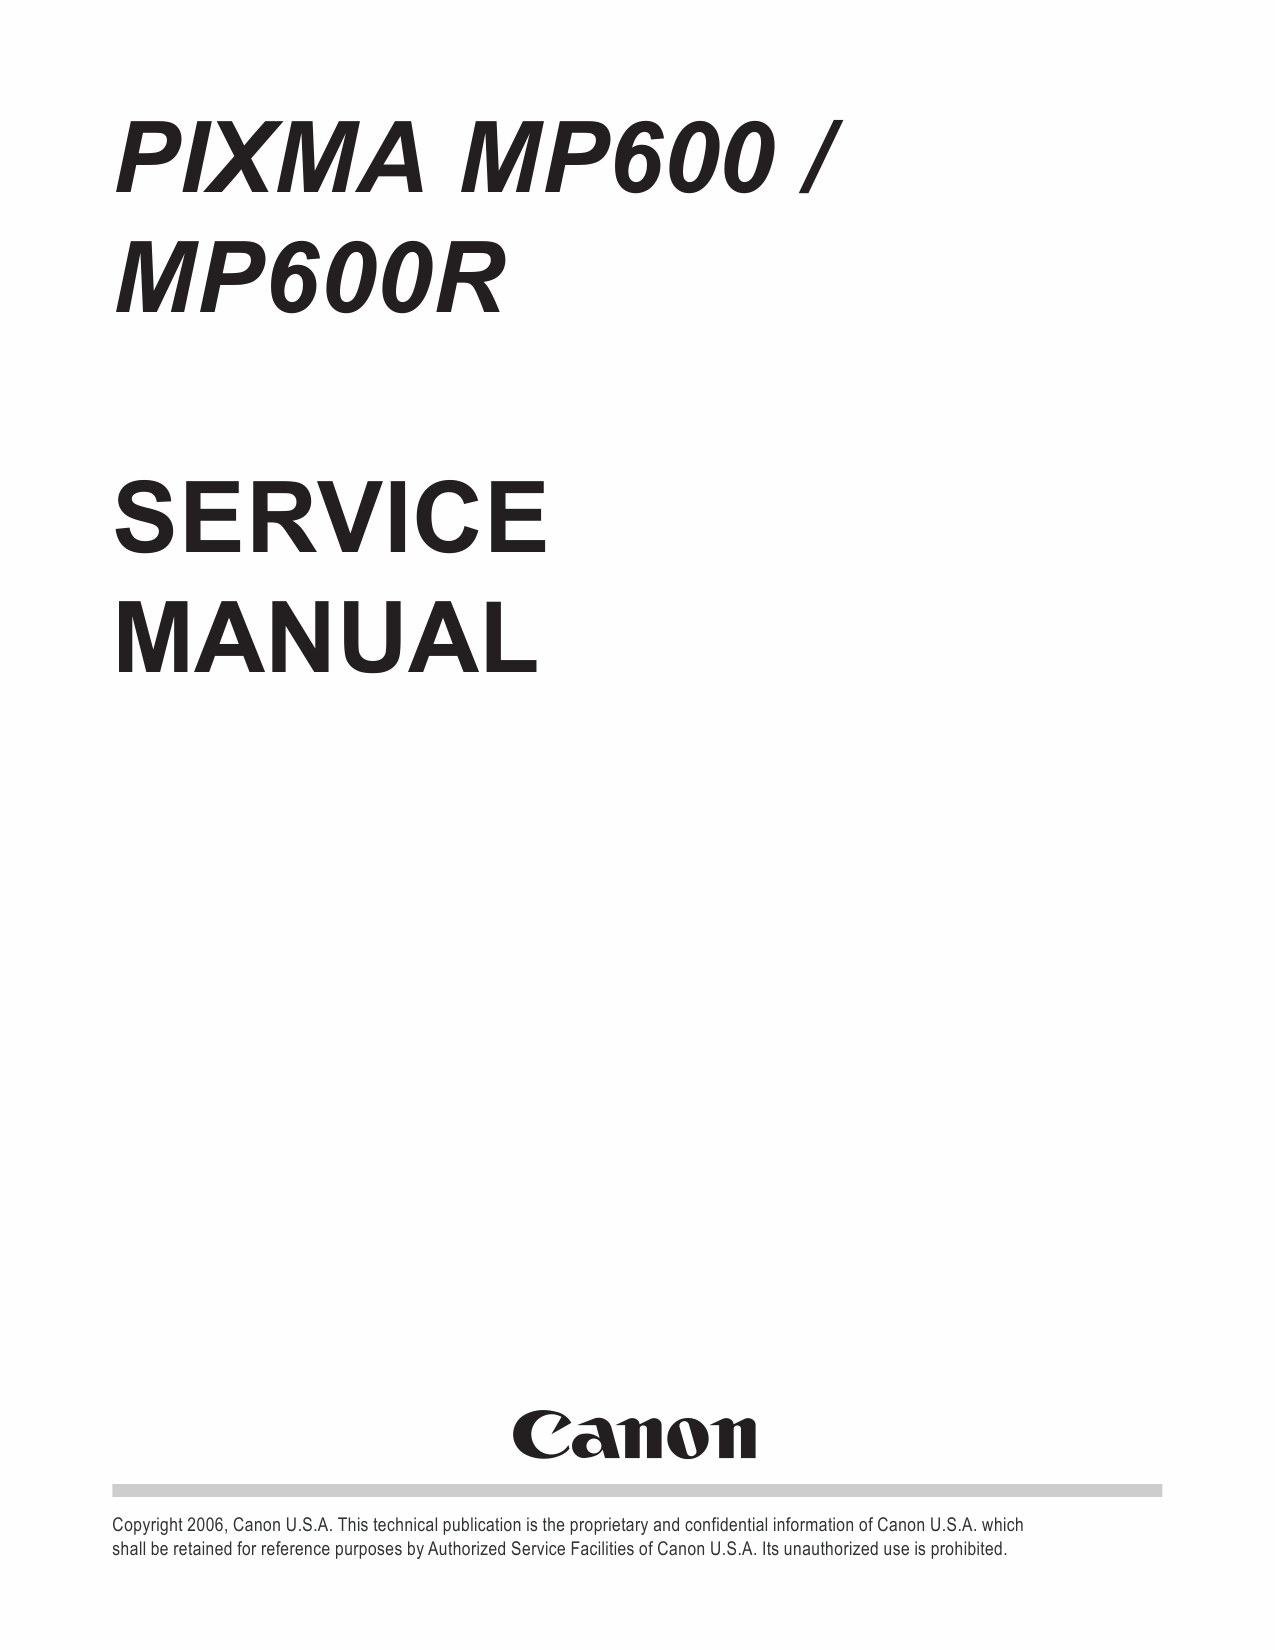 Canon PIXMA MP600 MP600R Service Manual-1